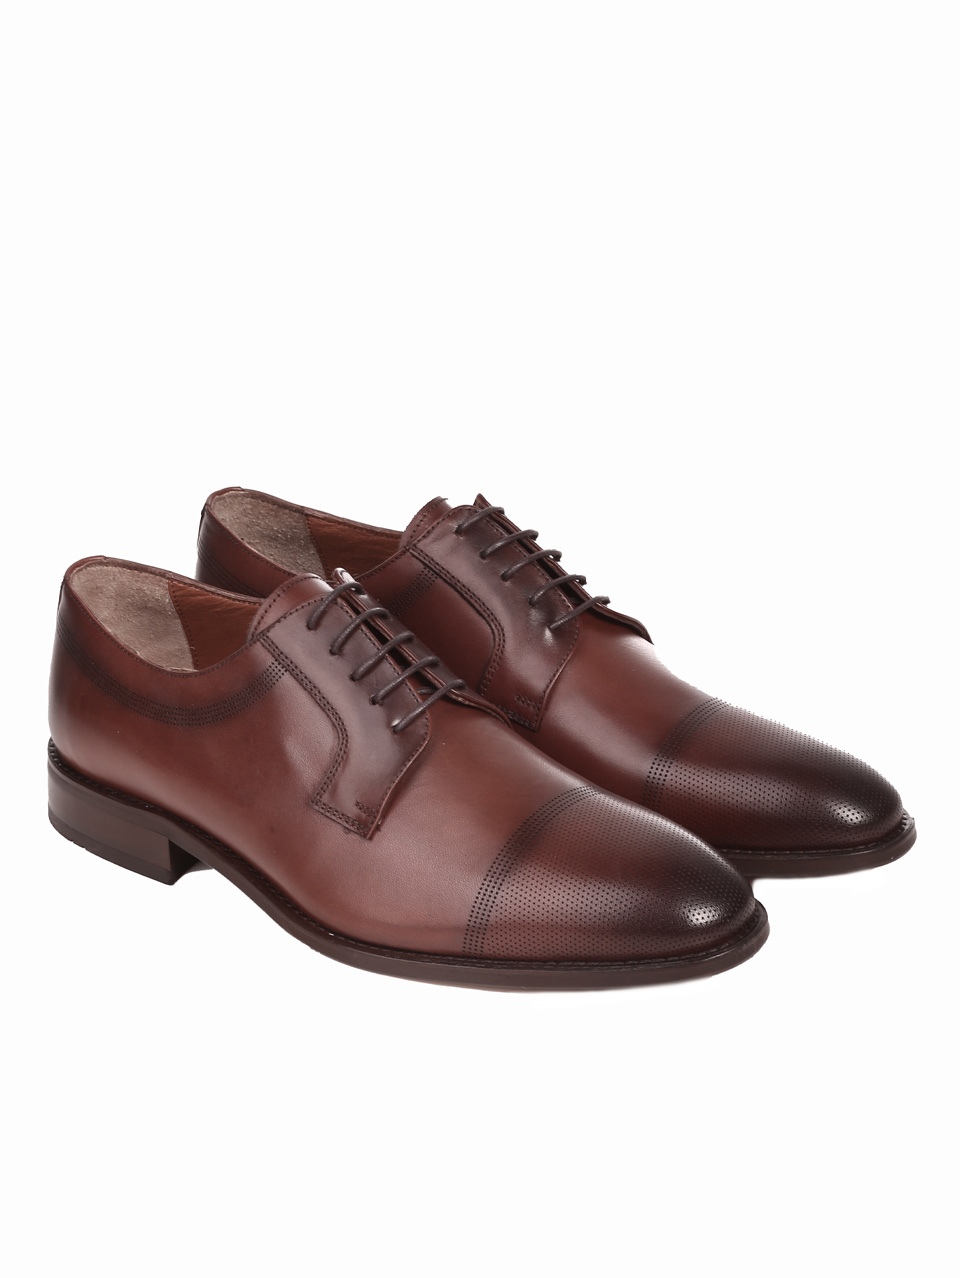 Мъжки елегантни обувки от естествена кожа в кафяво 2069 K-1 brown